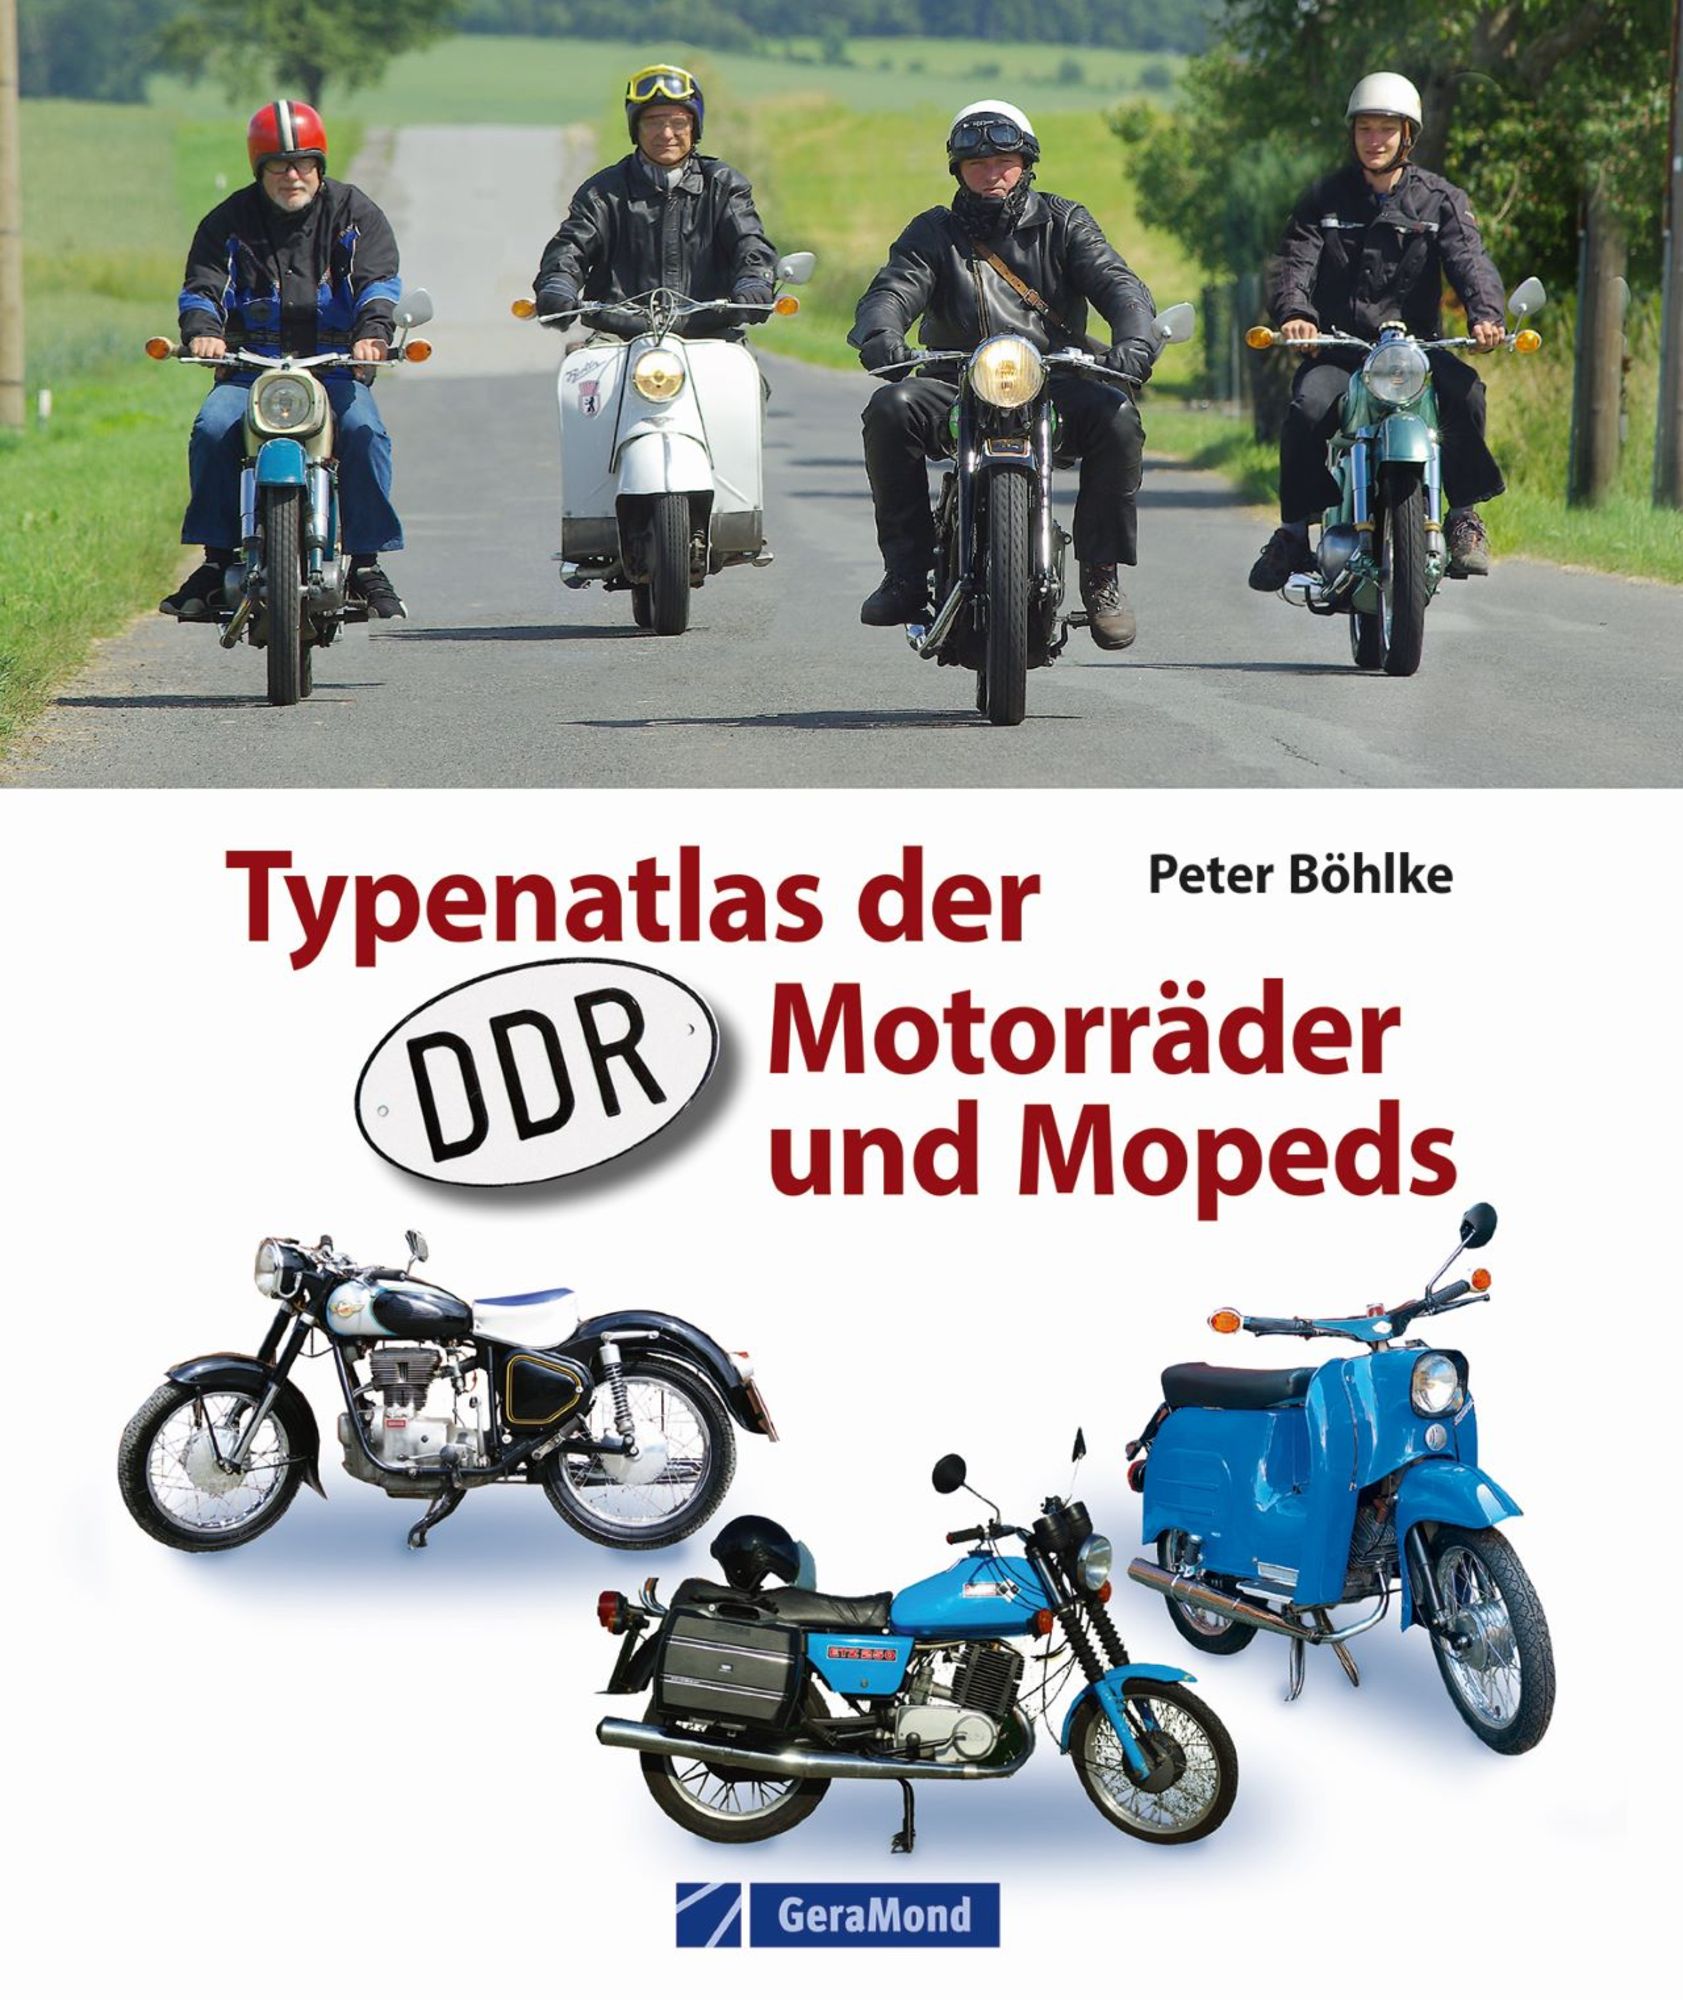 Länderaufkleber DDR Moped klein